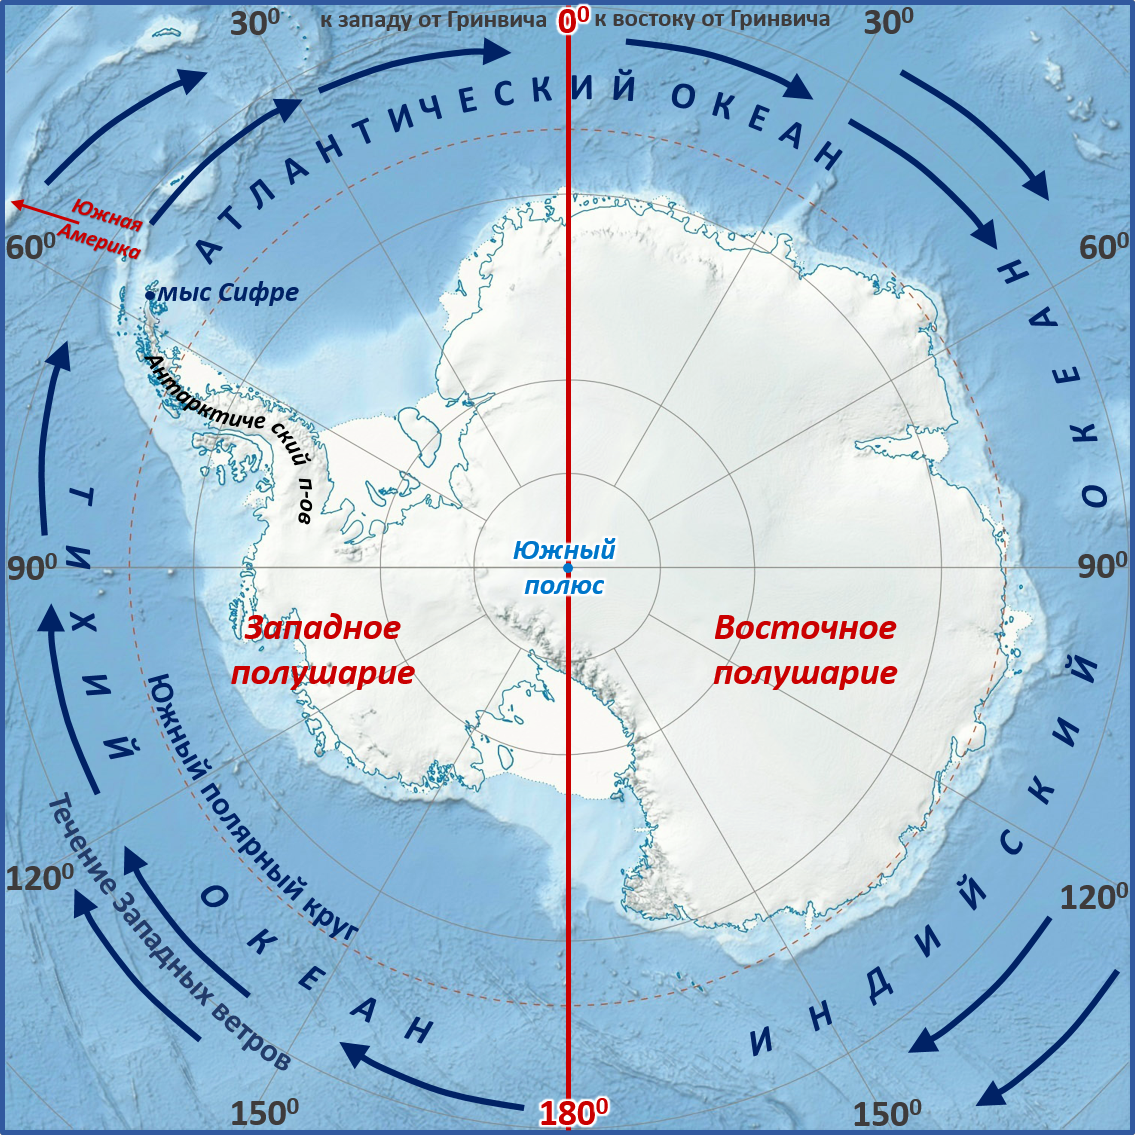 Какой океан в южном полушарии. Мыс Сифре на карте Антарктиды. Моря: Амундсена, Беллинсгаузена, Росса, Уэдделла.. Мыс Сифре Антарктида. Южный полюс на карте Антарктиды.